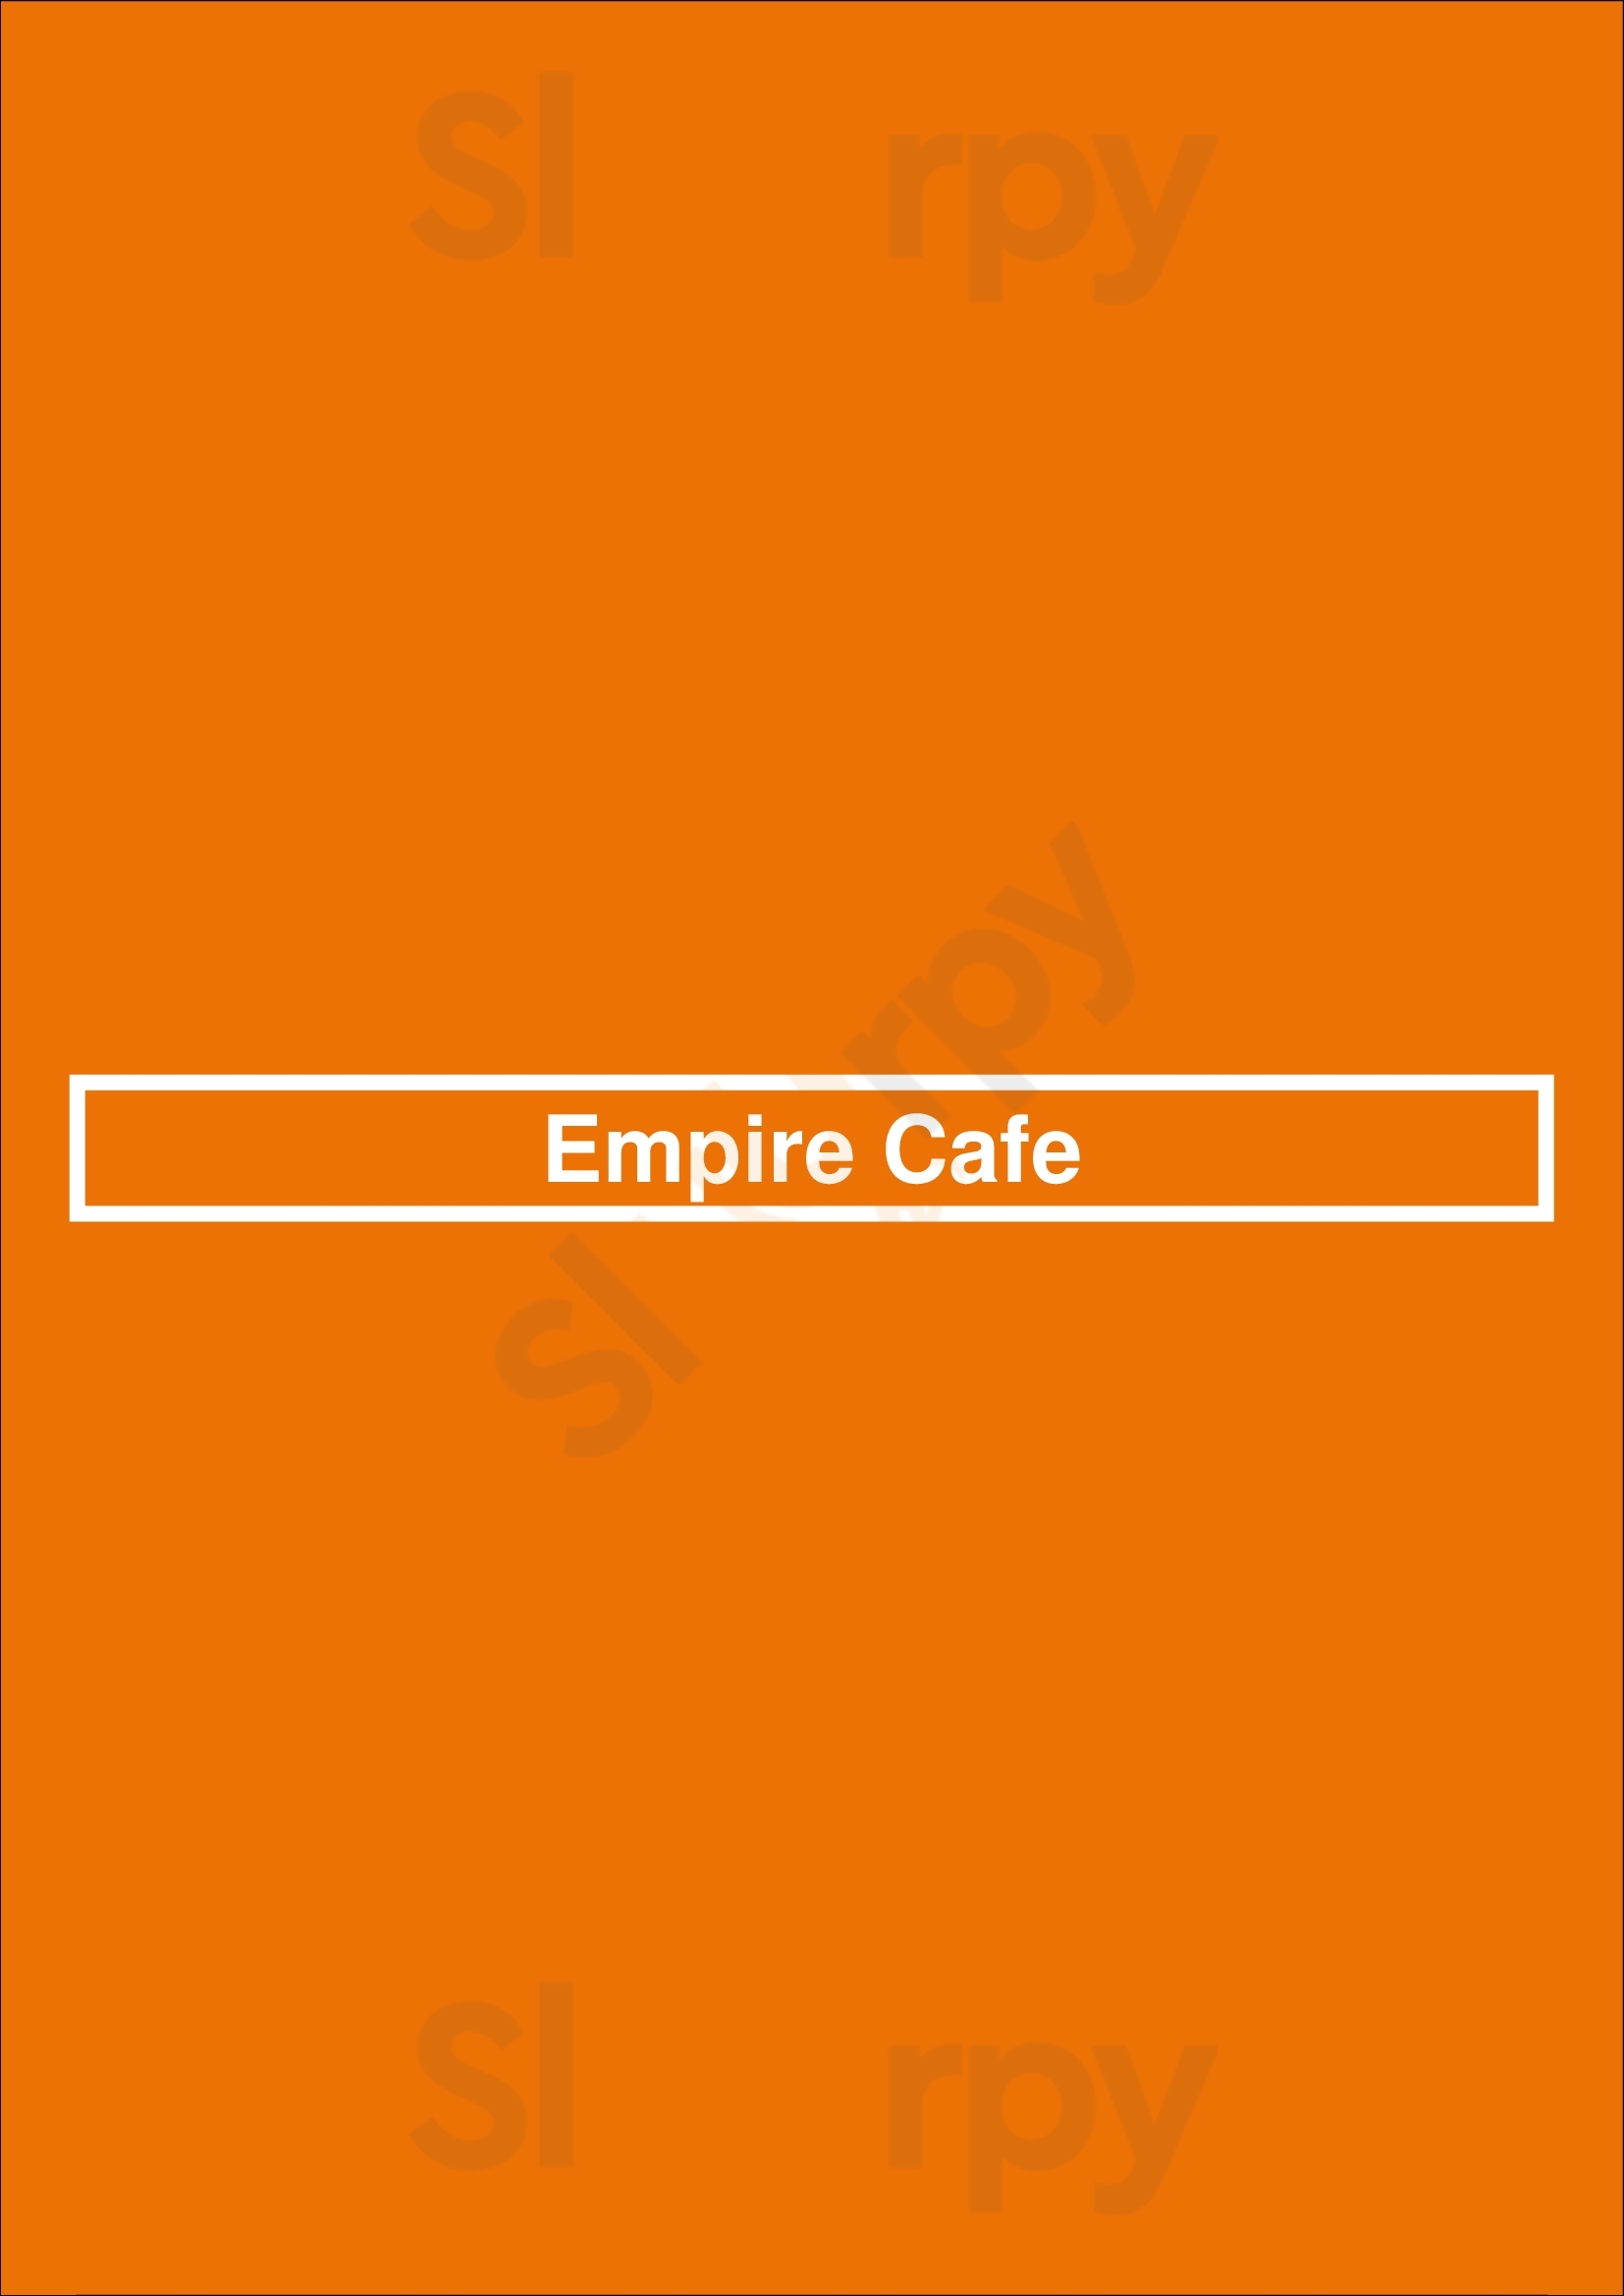 Empire Cafe Houston Menu - 1